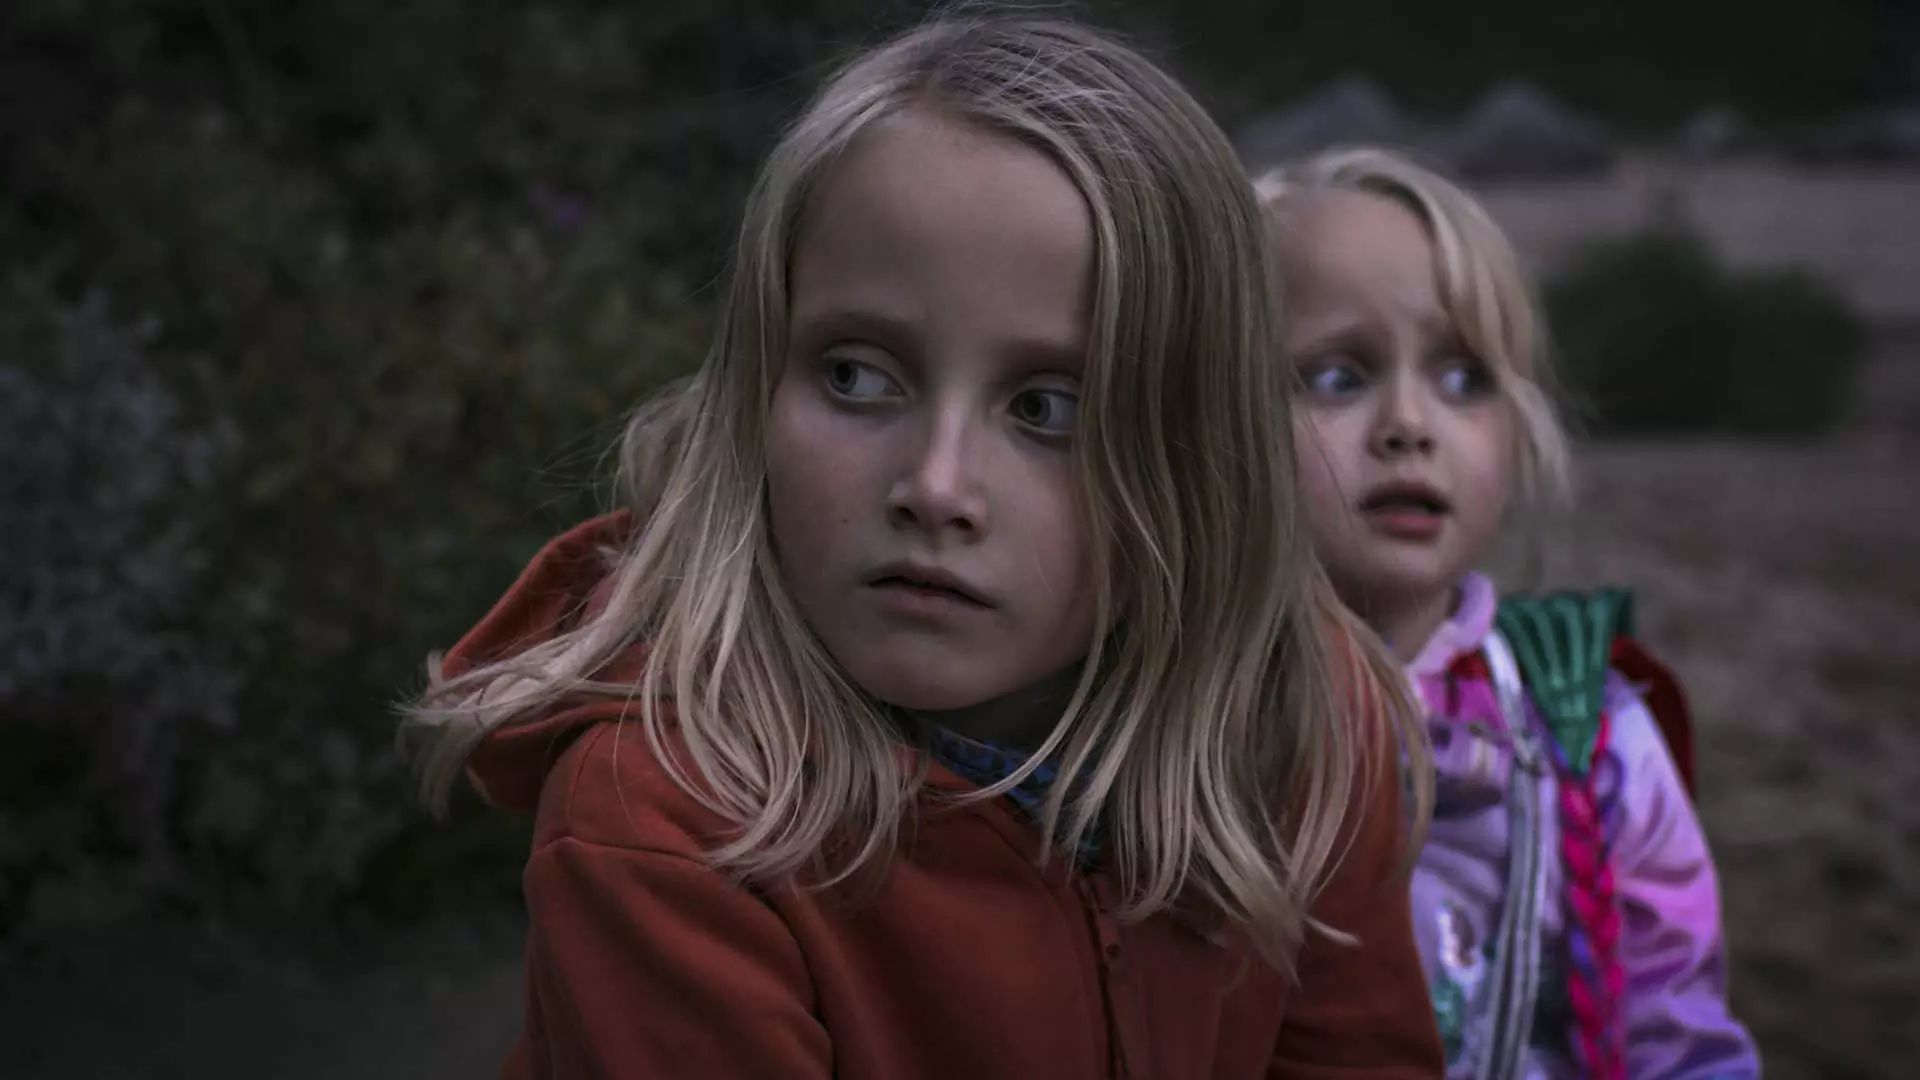 Halvnært bilde av to jenter på 8 og 5 år. De er i skogen og det kan se ut som at det er kveld. De ser bekymret ut.